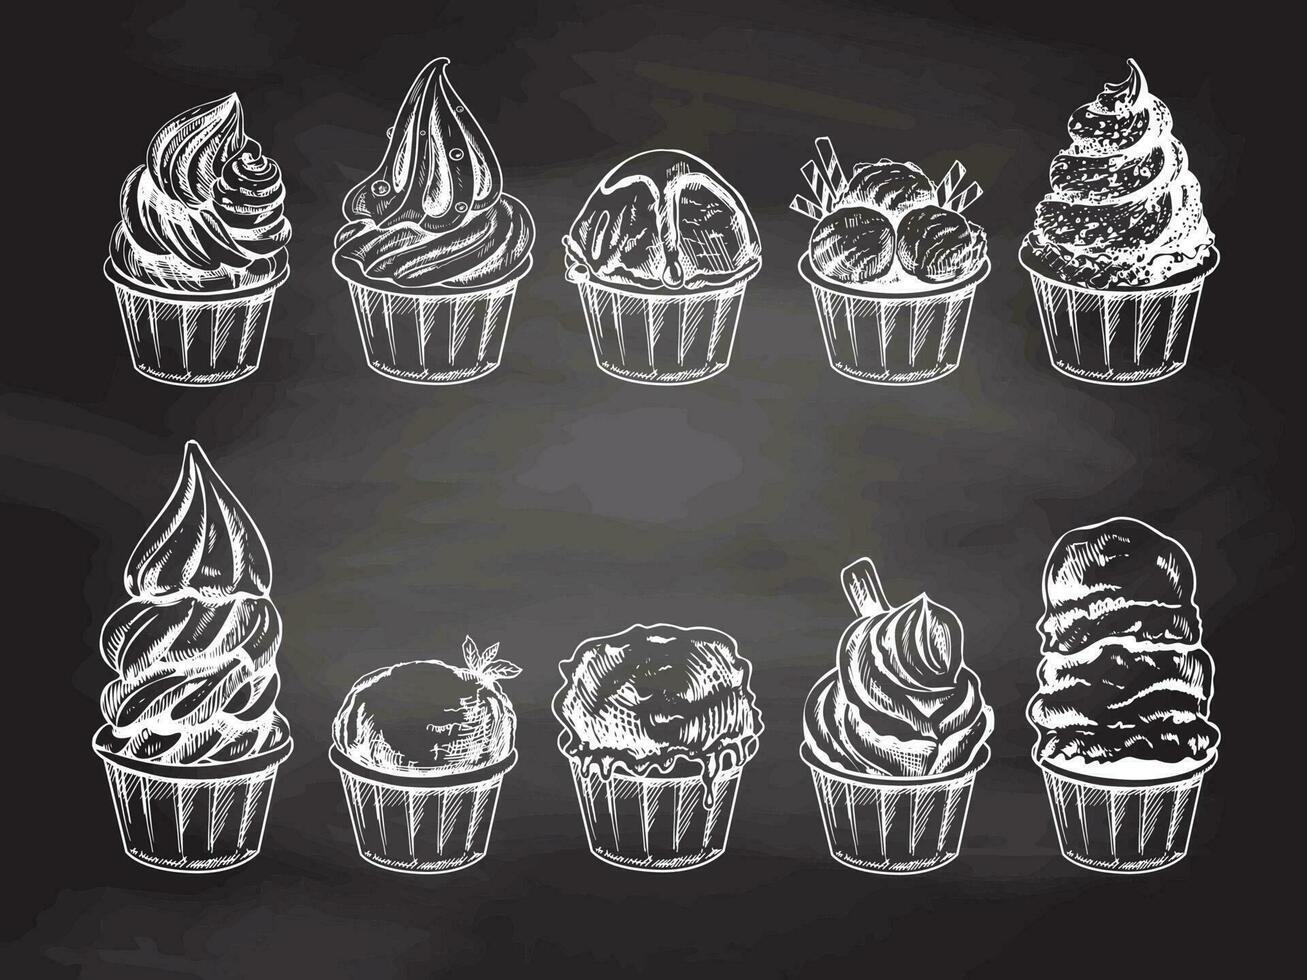 handgemalt skizzieren von Eis Sahne Bälle, gefroren Joghurt oder Cupcakes im Tassen isoliert auf Tafel Hintergrund, Weiß Zeichnung. Satz. Vektor Jahrgang graviert Illustration.